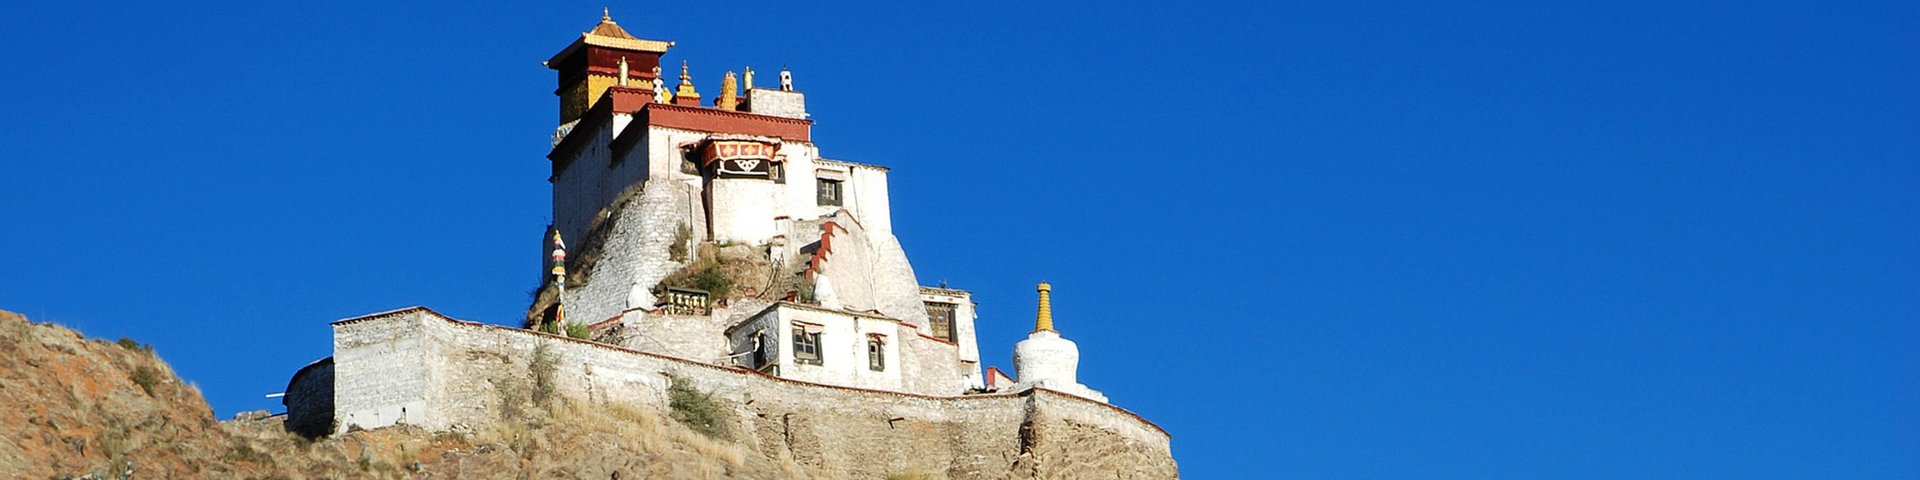 Tibetisches Kloster auf Felshügel